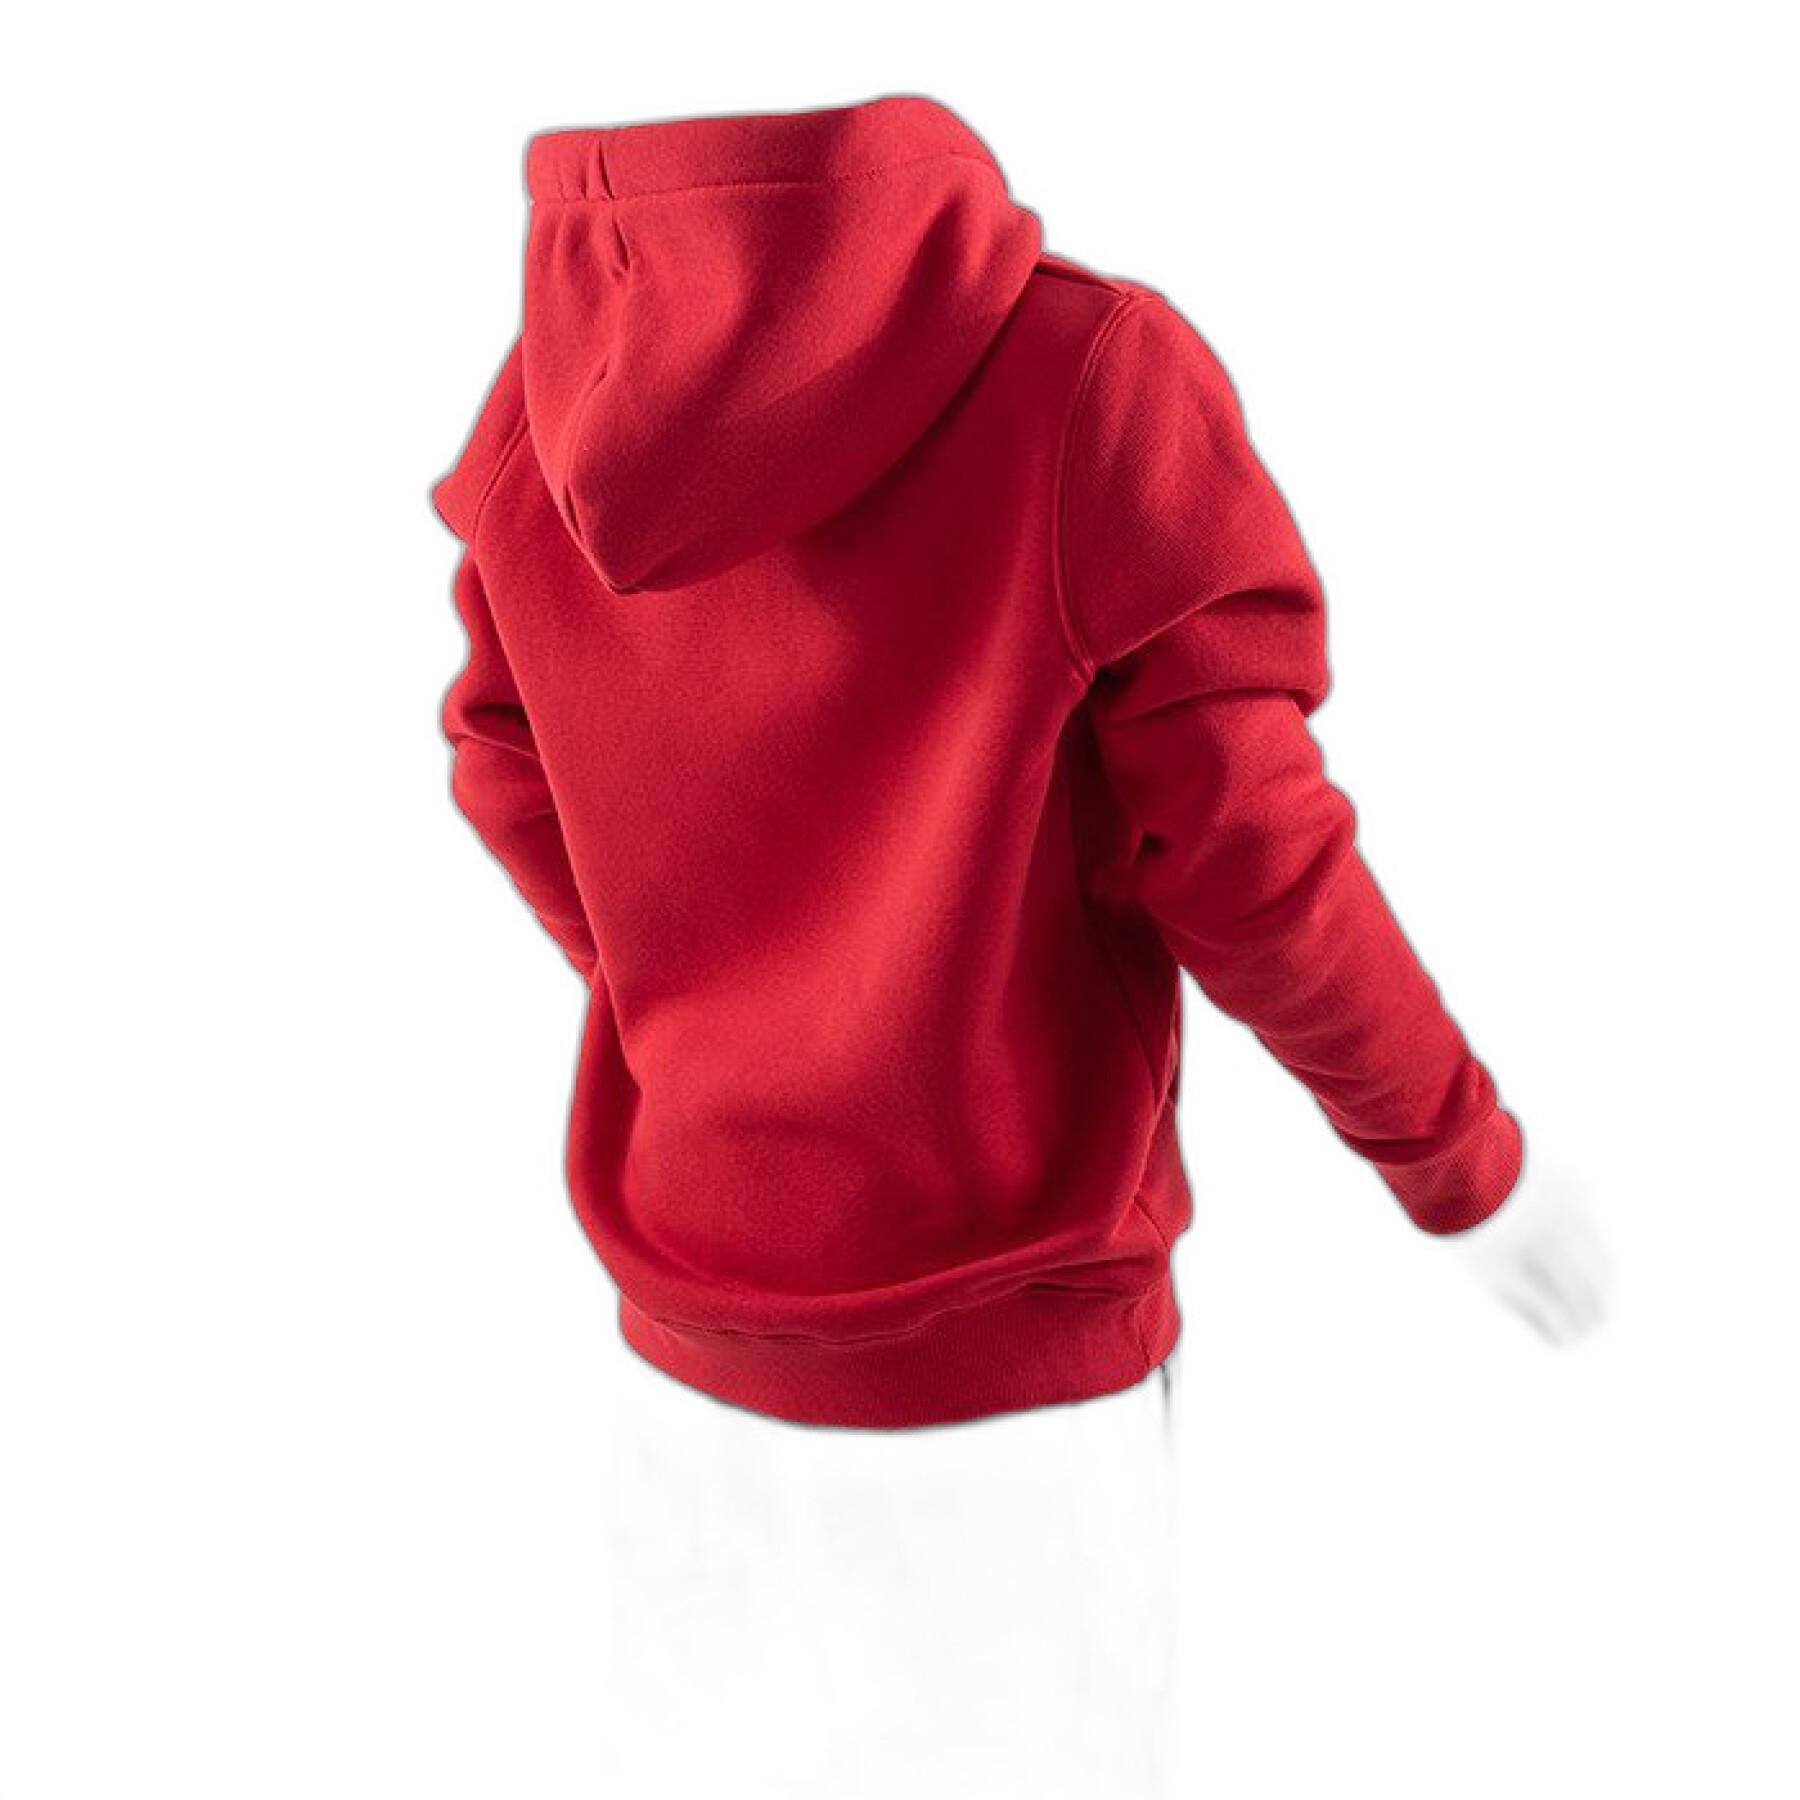 Children's hoodie Alpha Industries Basic